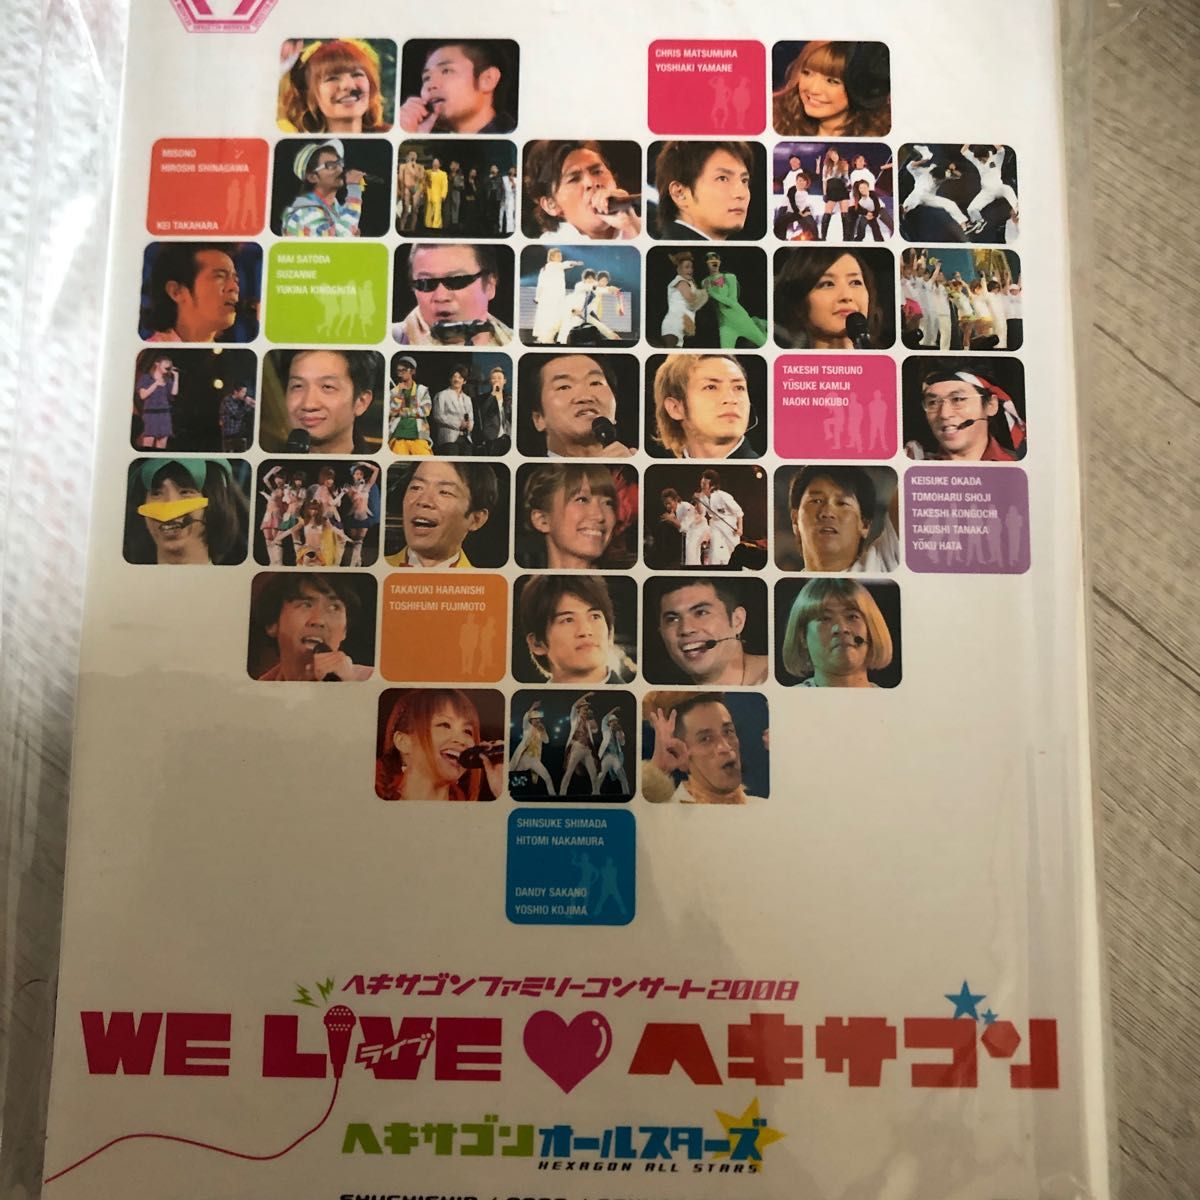 ヘキサゴン ファミリーコンサート2008 WE LIVE ヘキサゴン (Deluxe Version) [DVD] 